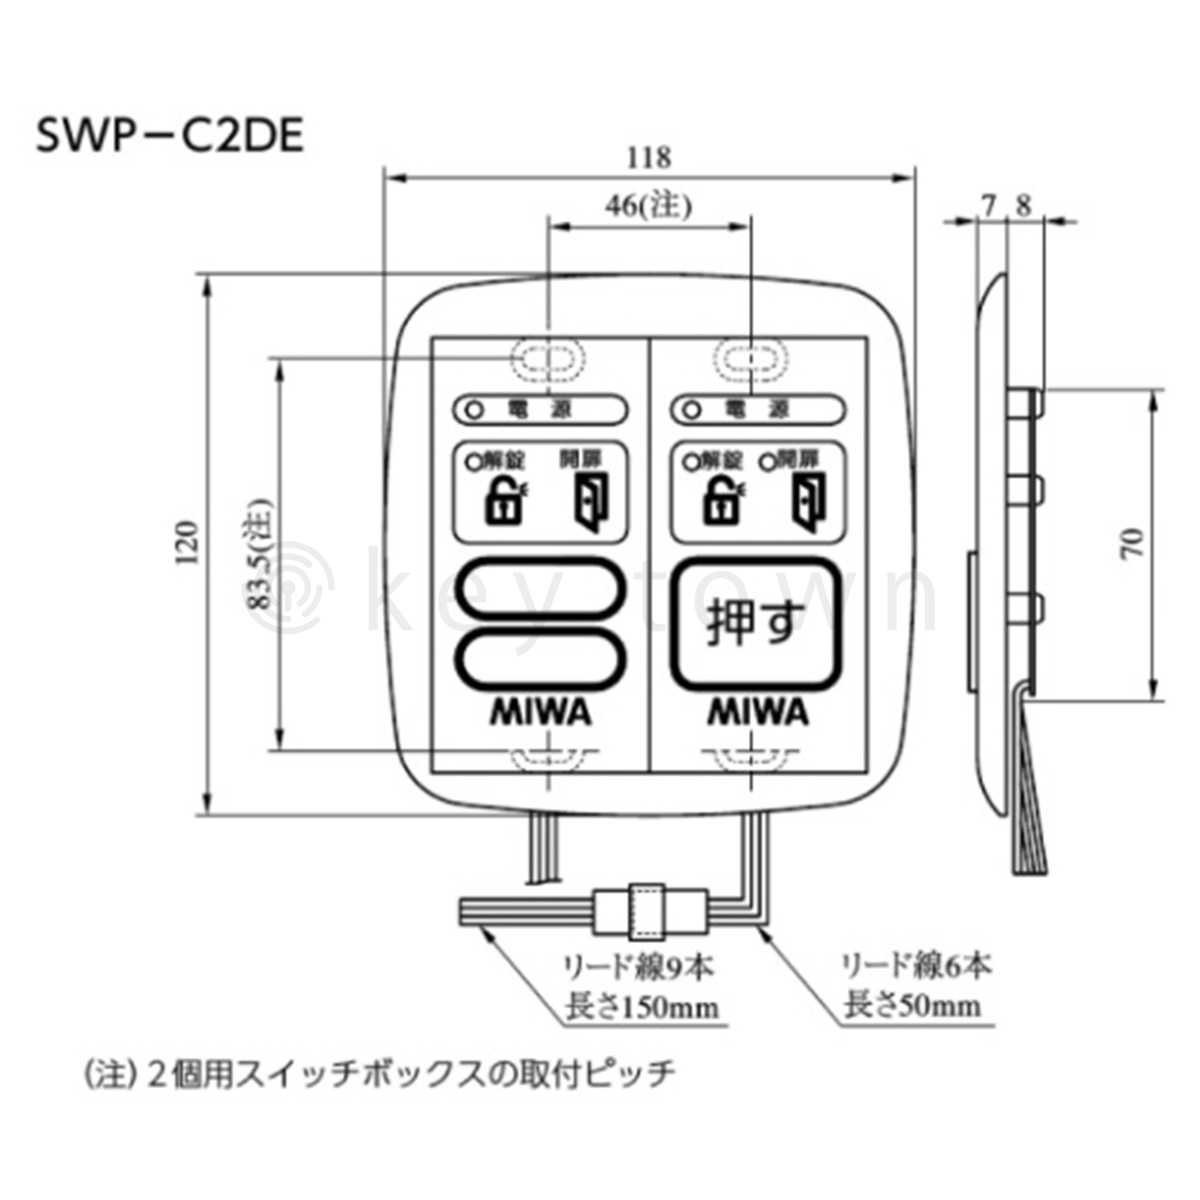 MIWA【美和ロック】 SWP-C2DE 操作表示器 遠隔操作[MIWA SWD-C2DE]｜鍵・シリンダーの格安ネット通販【鍵TOWN】